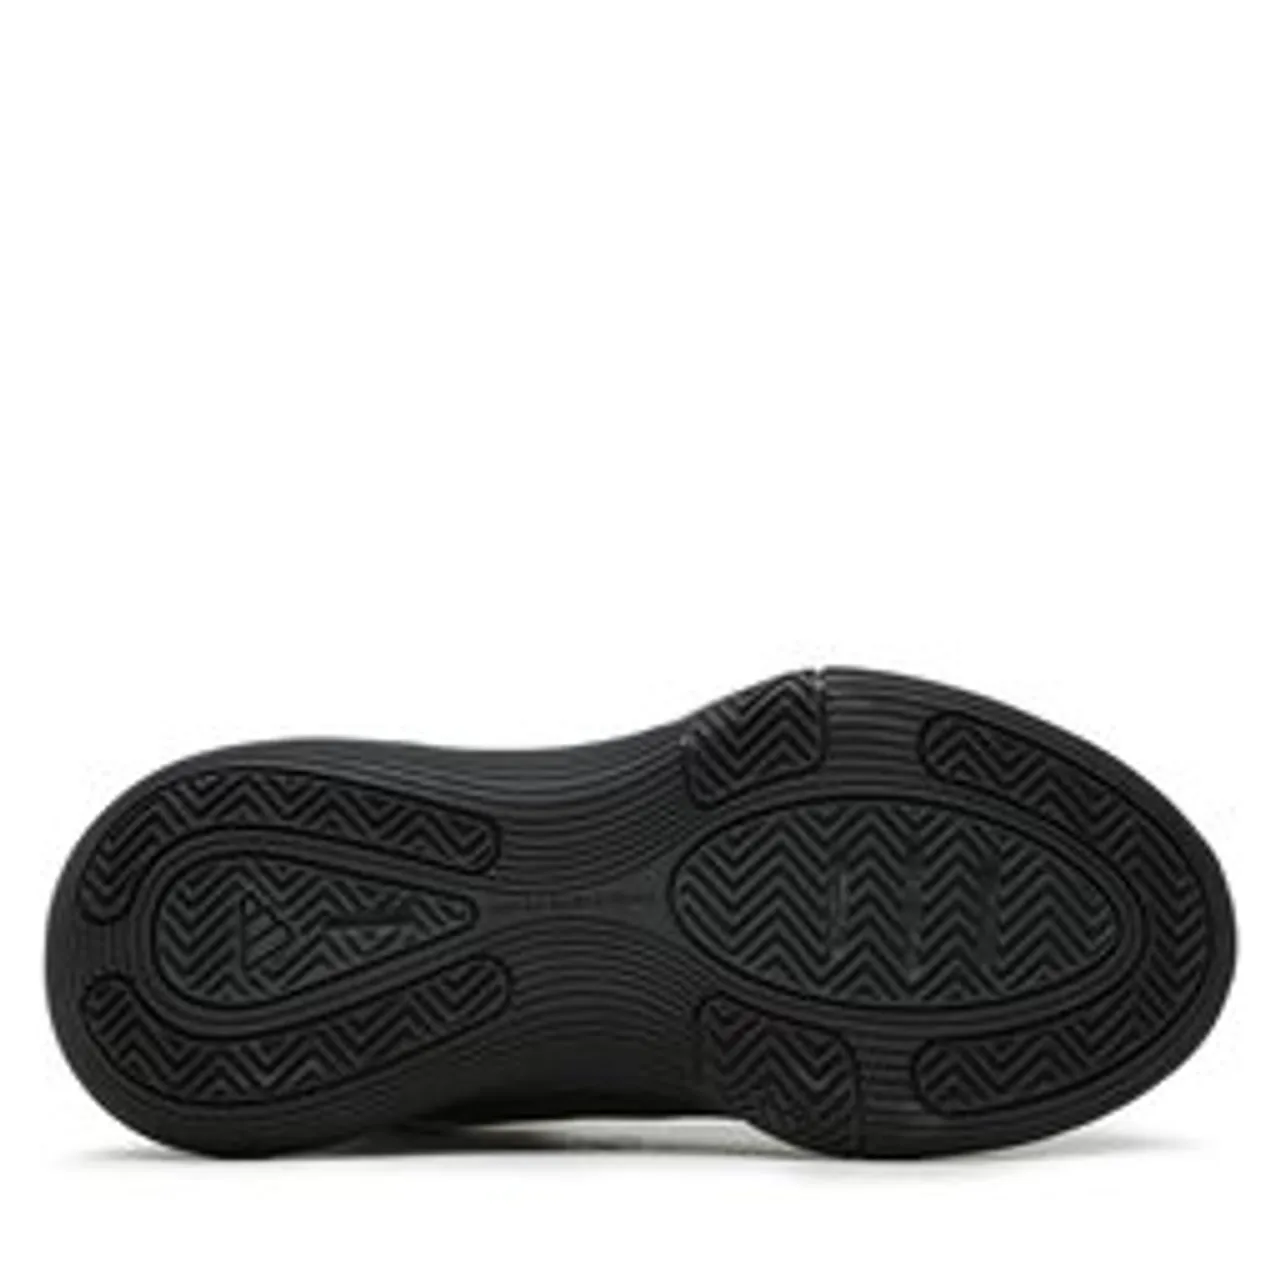 Schuhe adidas Bounce Legends Shoes IE9278 Carbon/Goldmt/Cblack